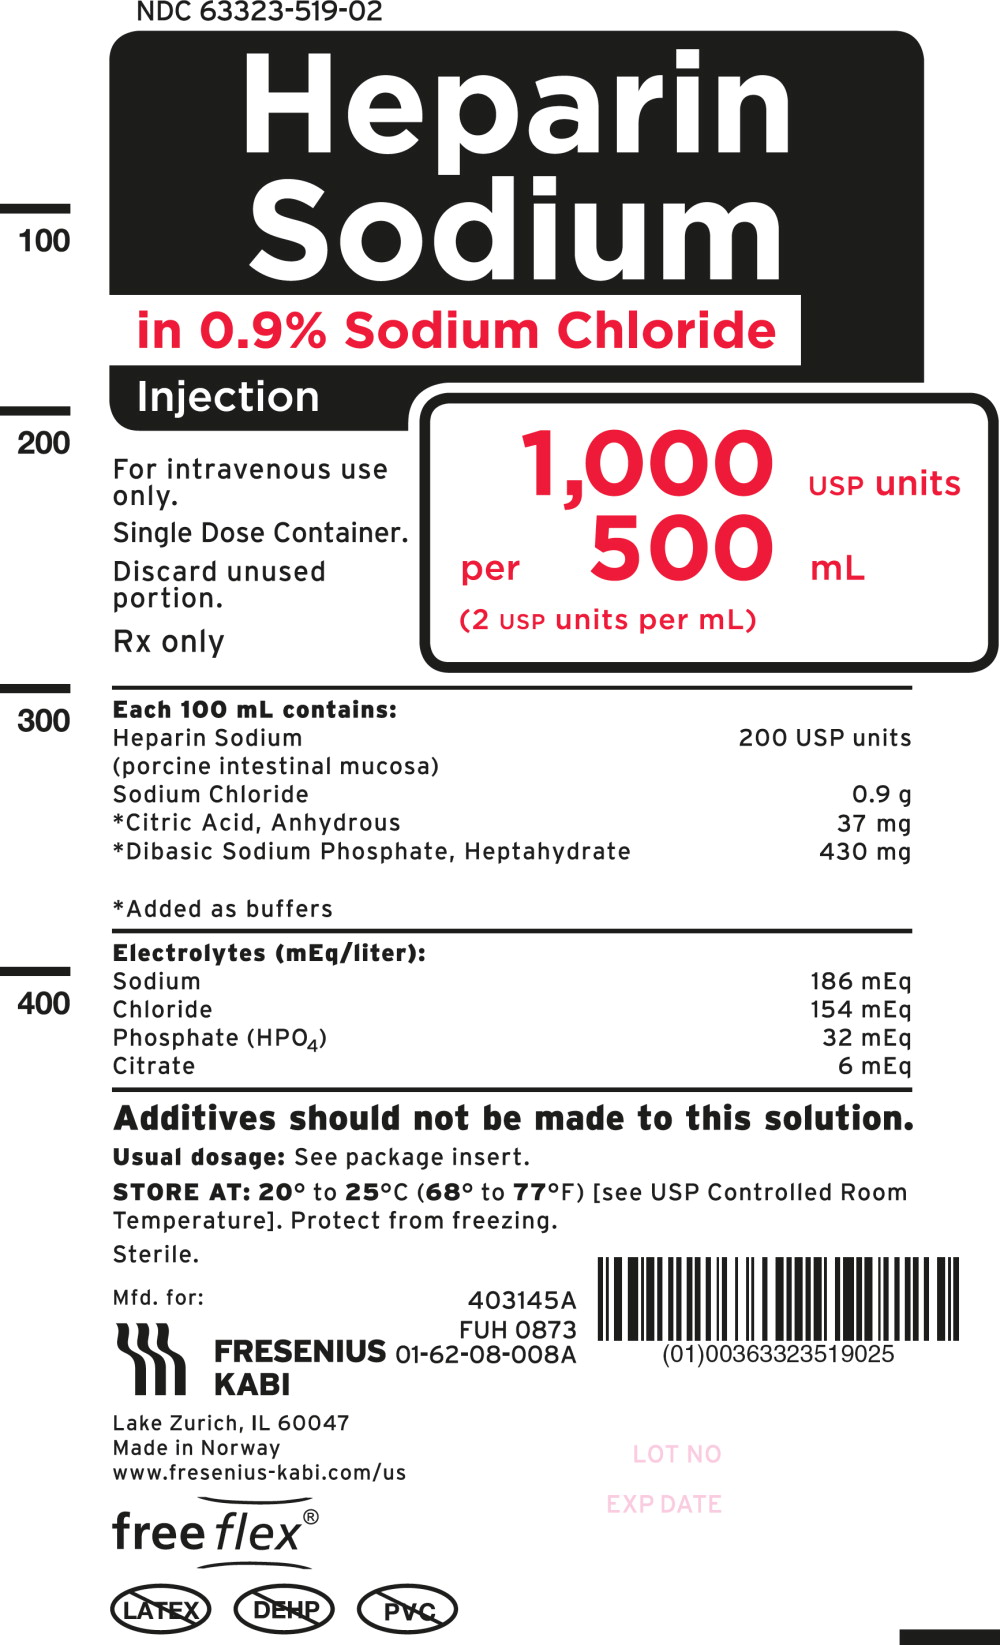 PACKAGE LABEL- PRINCIPAL DISPLAY PANEL – Heparin Sodium 500 mL Bag Label
